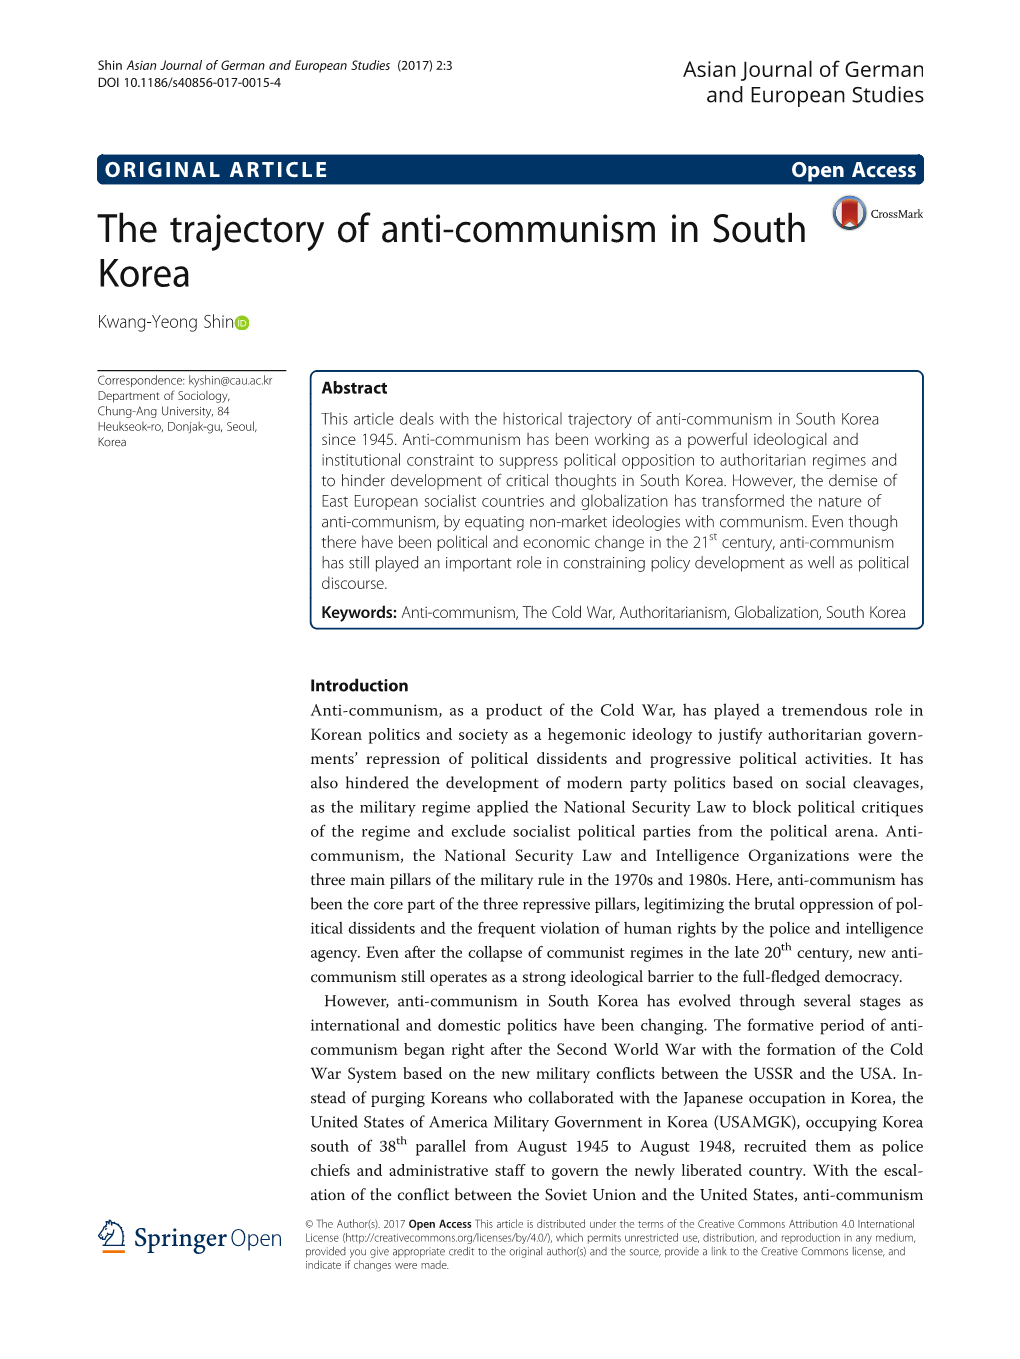 The Trajectory of Anti-Communism in South Korea Kwang-Yeong Shin